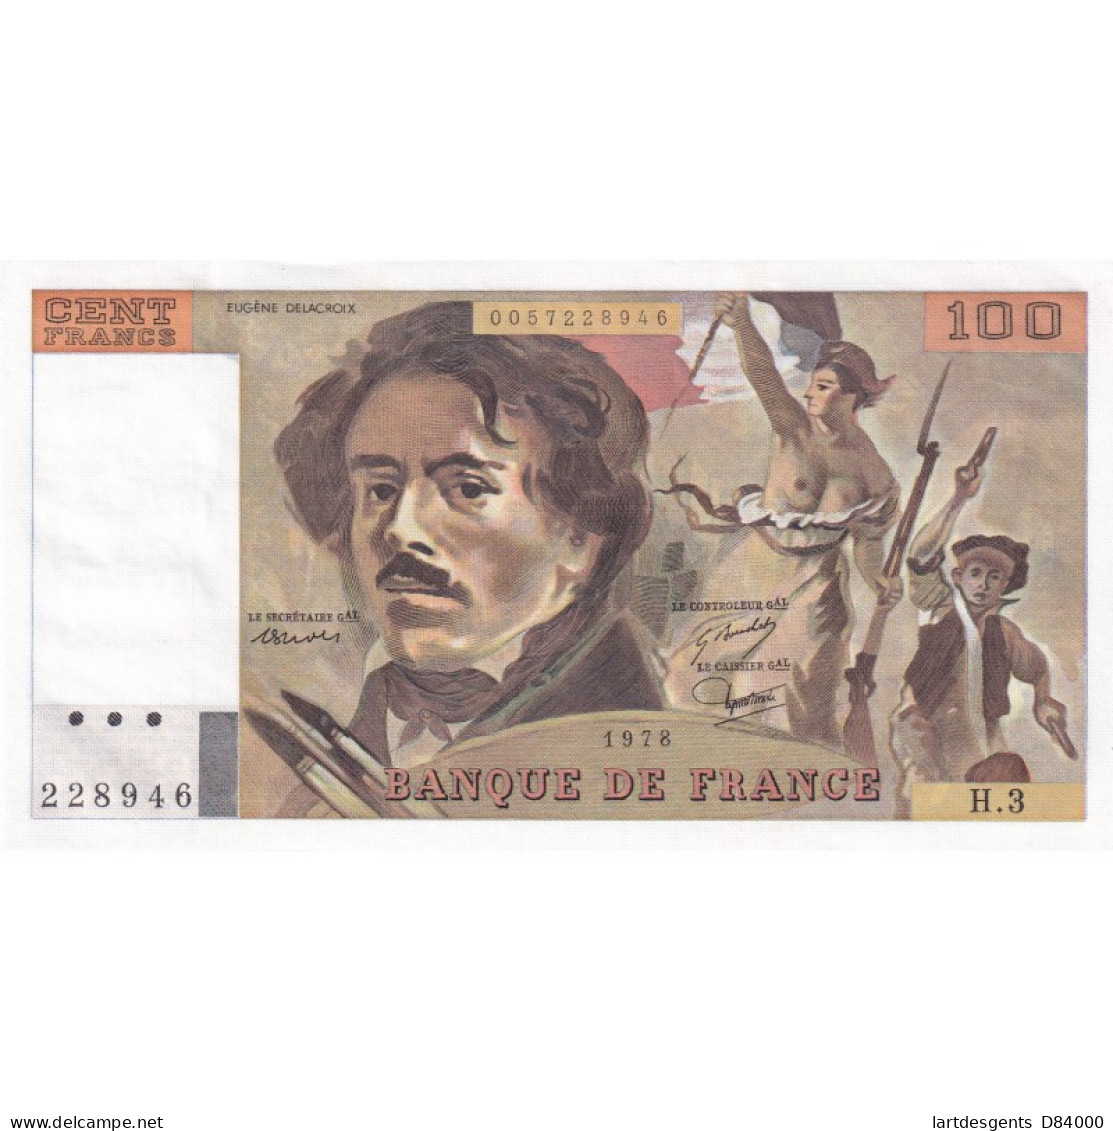 Billet France 100 Francs Delacroix 1978, H.3 228946 UNC, Cote 140 Euros,  Lartdesgents - 100 F 1978-1995 ''Delacroix''